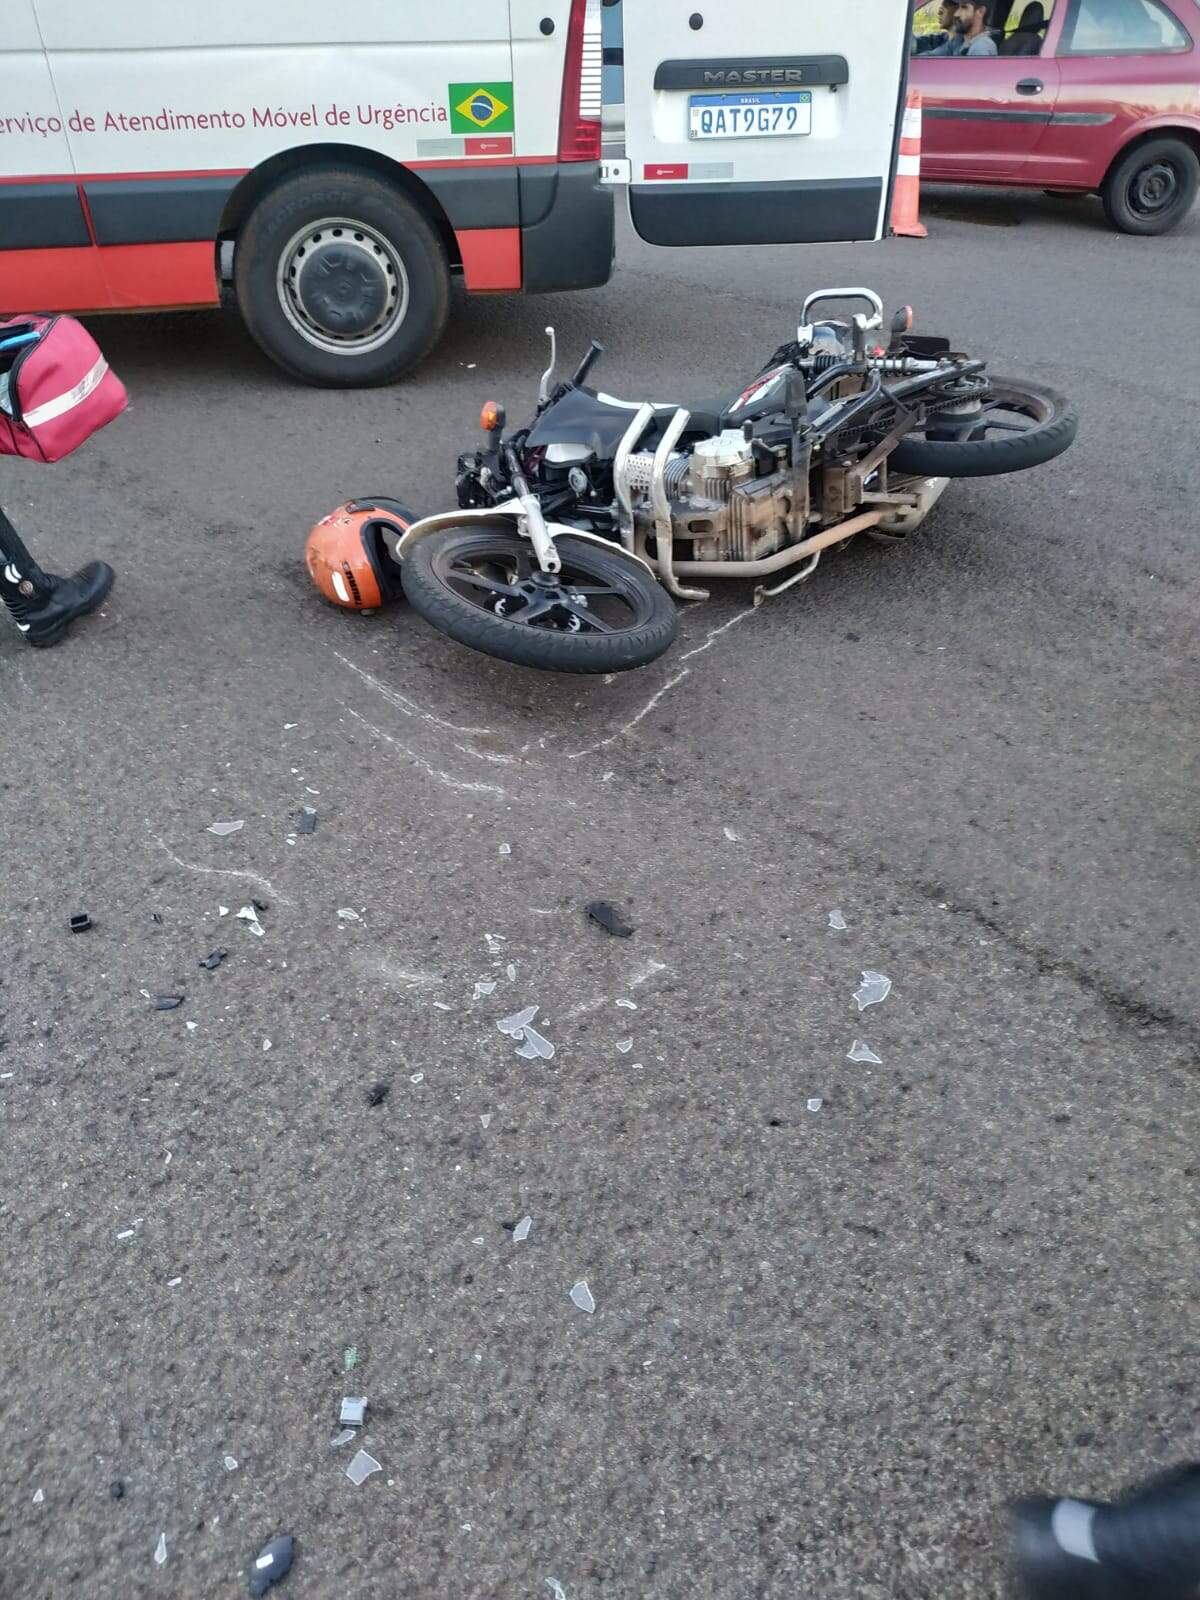 whatsapp image 2022 01 15 at 12.32.07 - Mototaxista fica tetraplégico em acidente e família precisa de ajuda